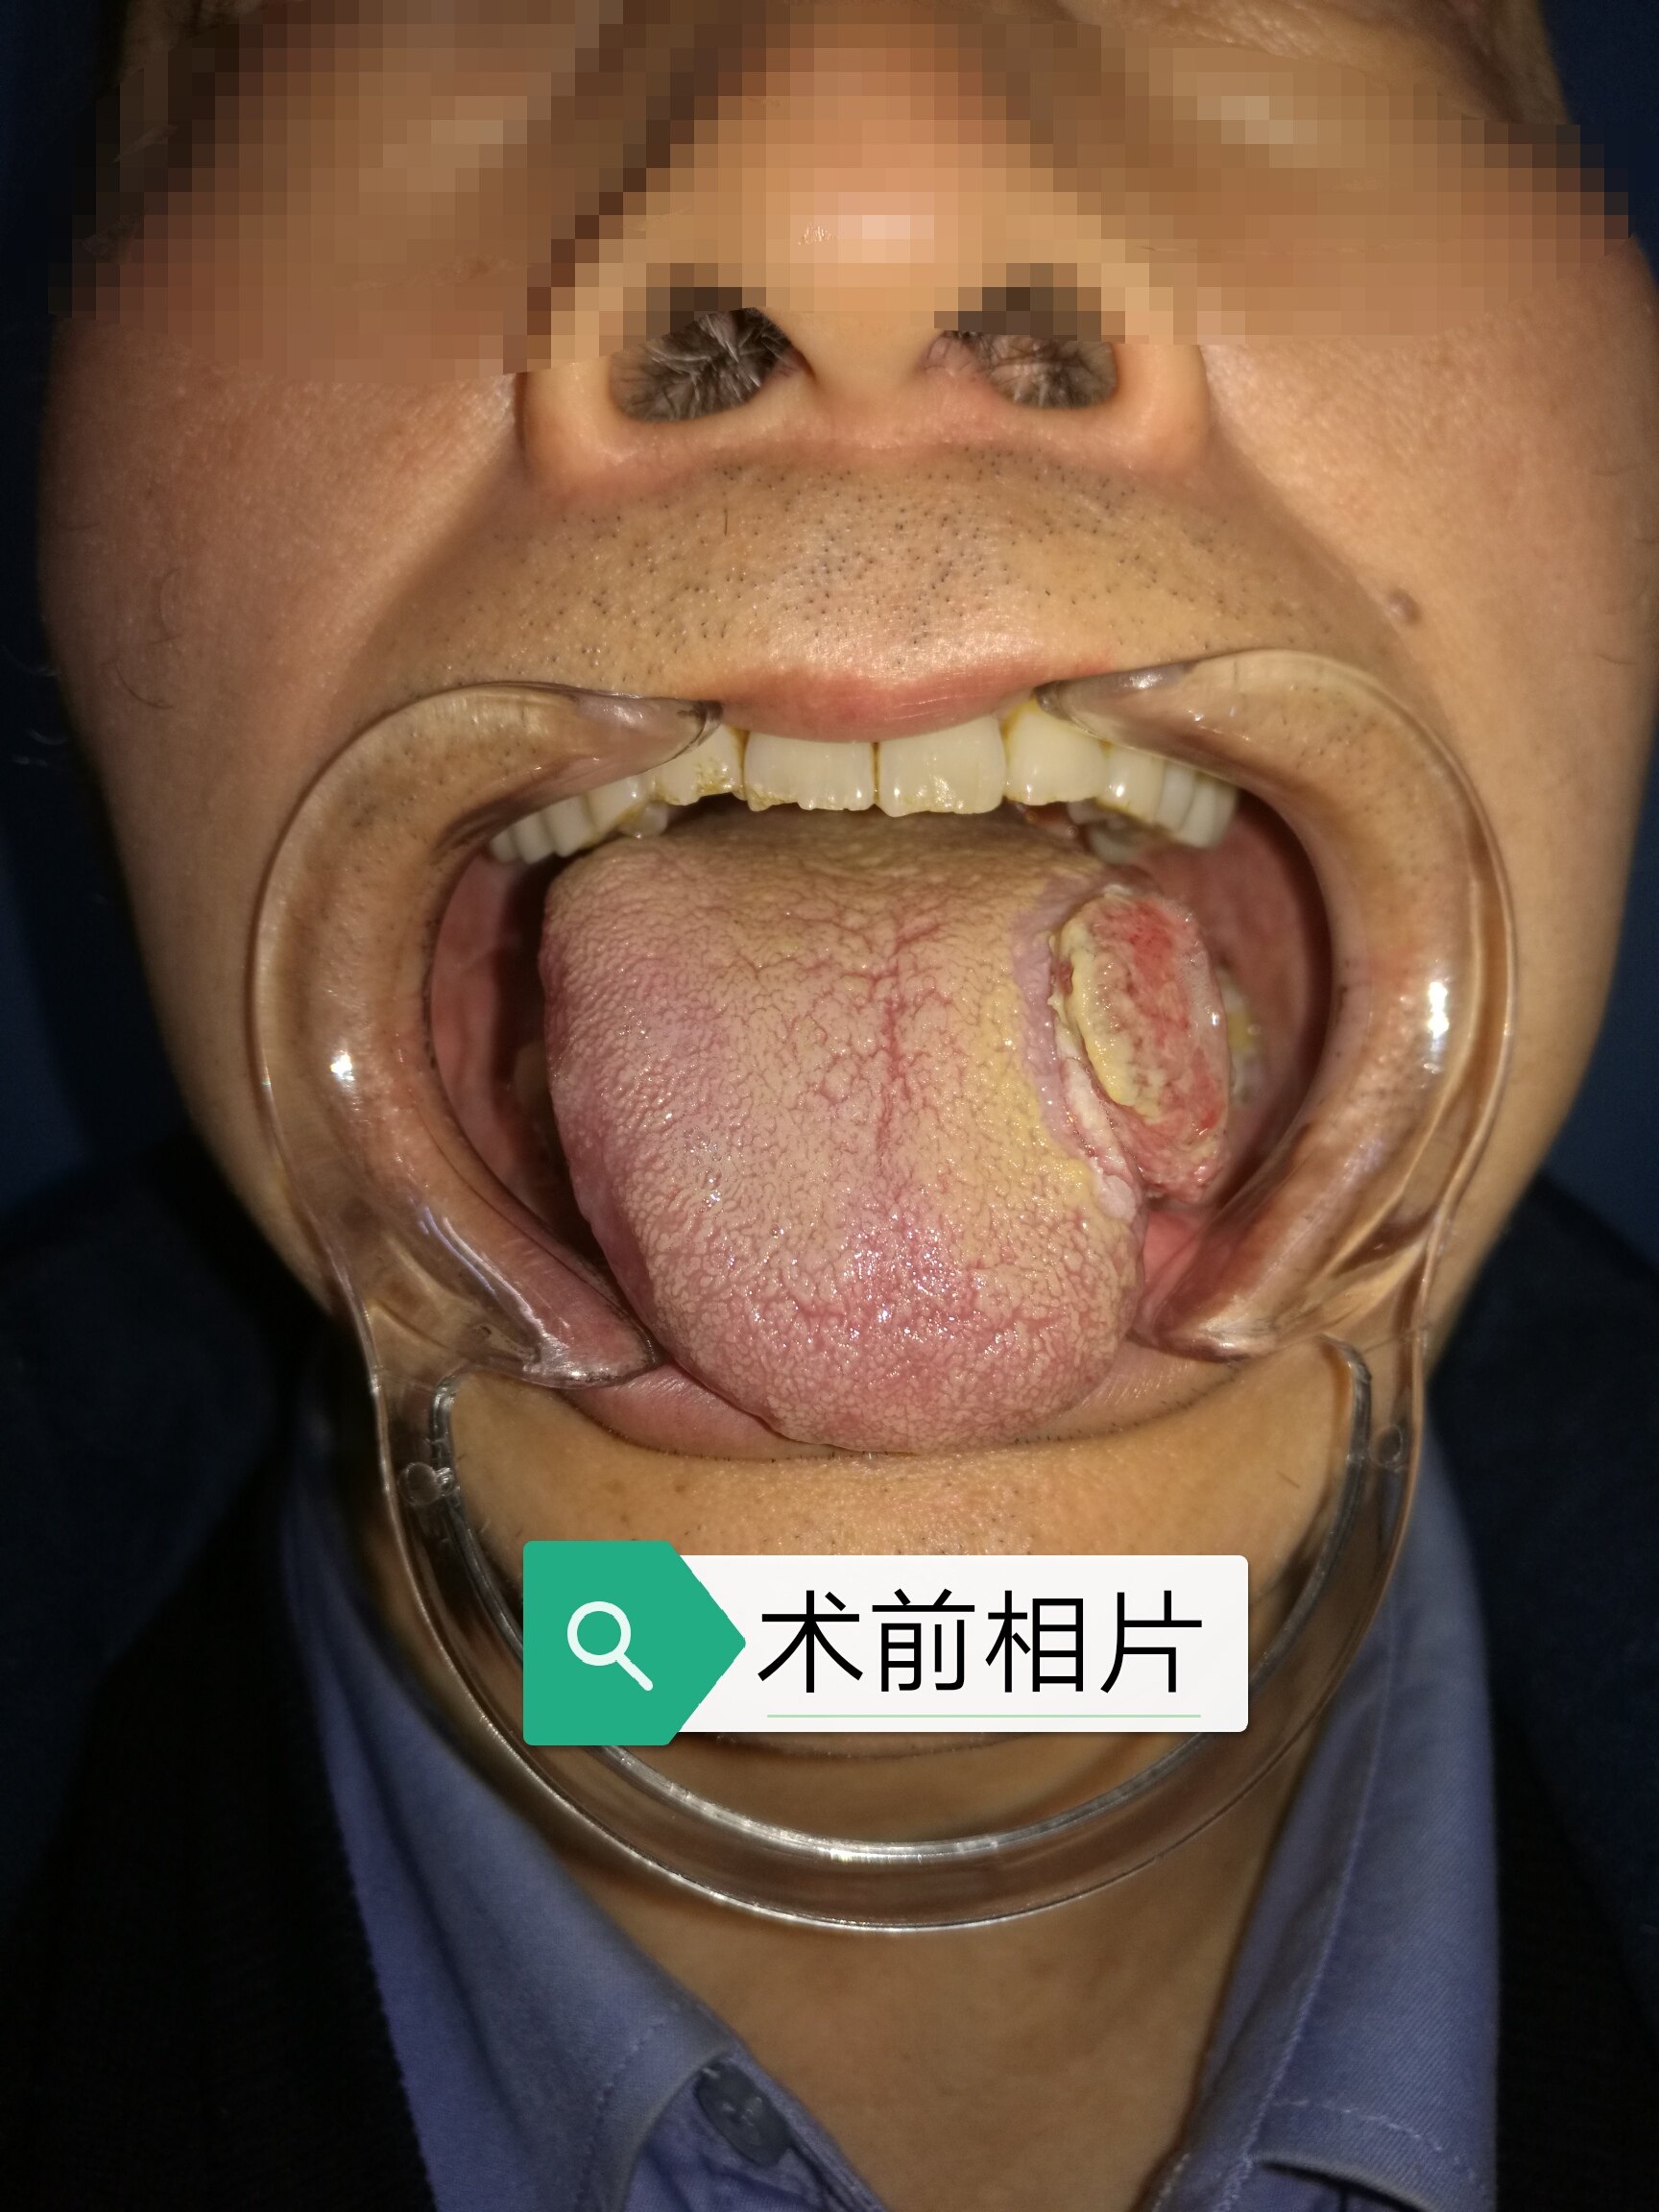 舌癌的图片大全晚期图片